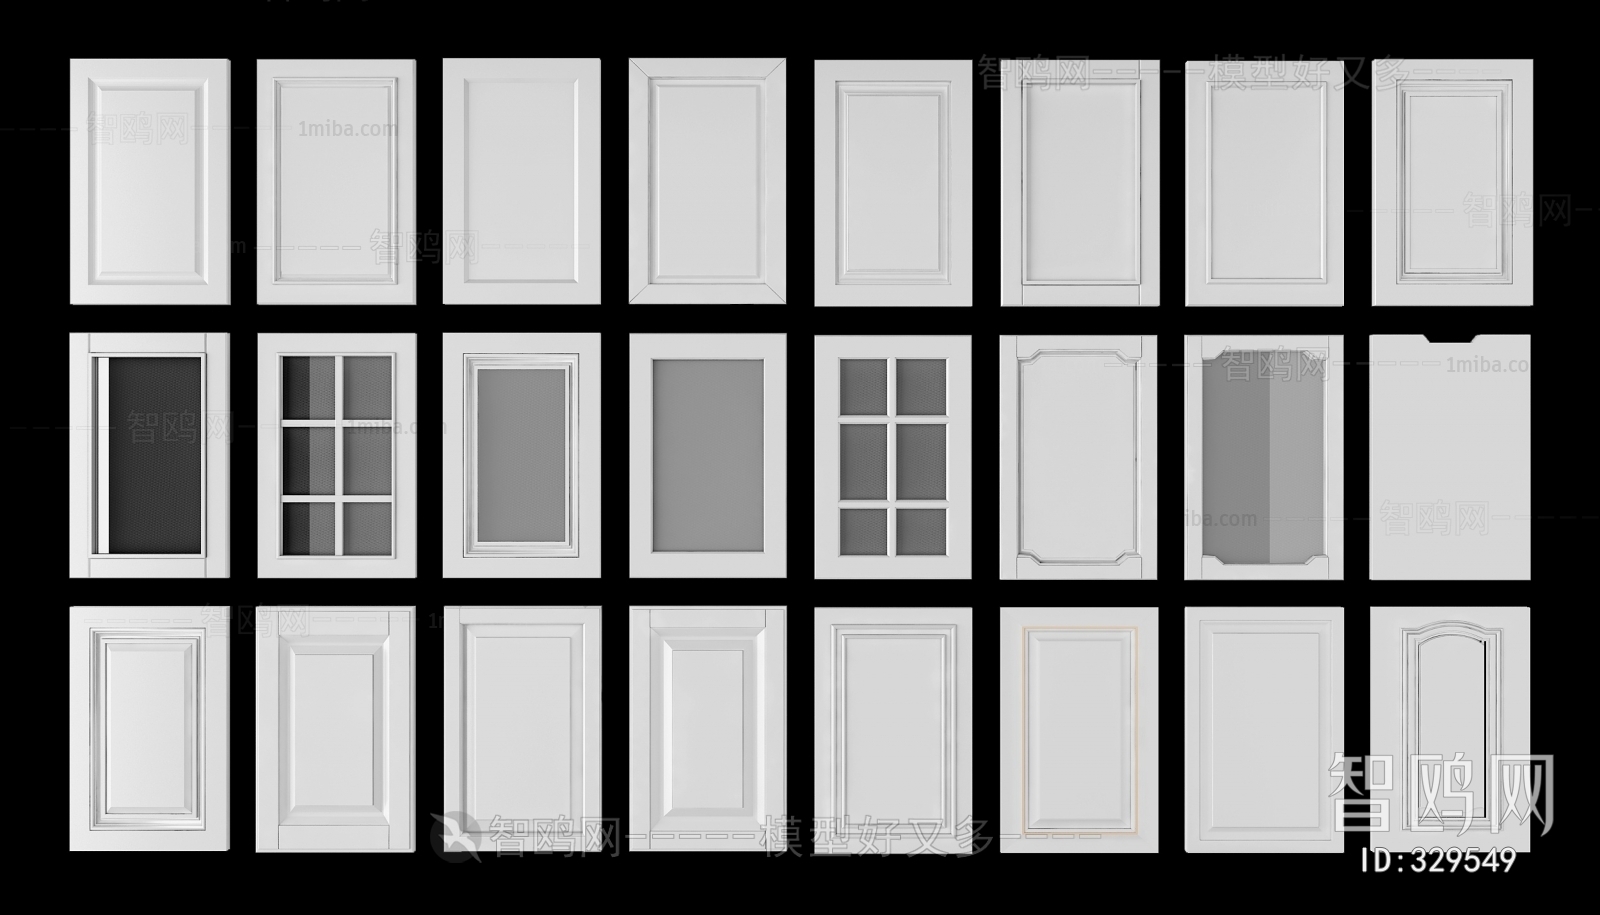 Simple European Style Door Panel